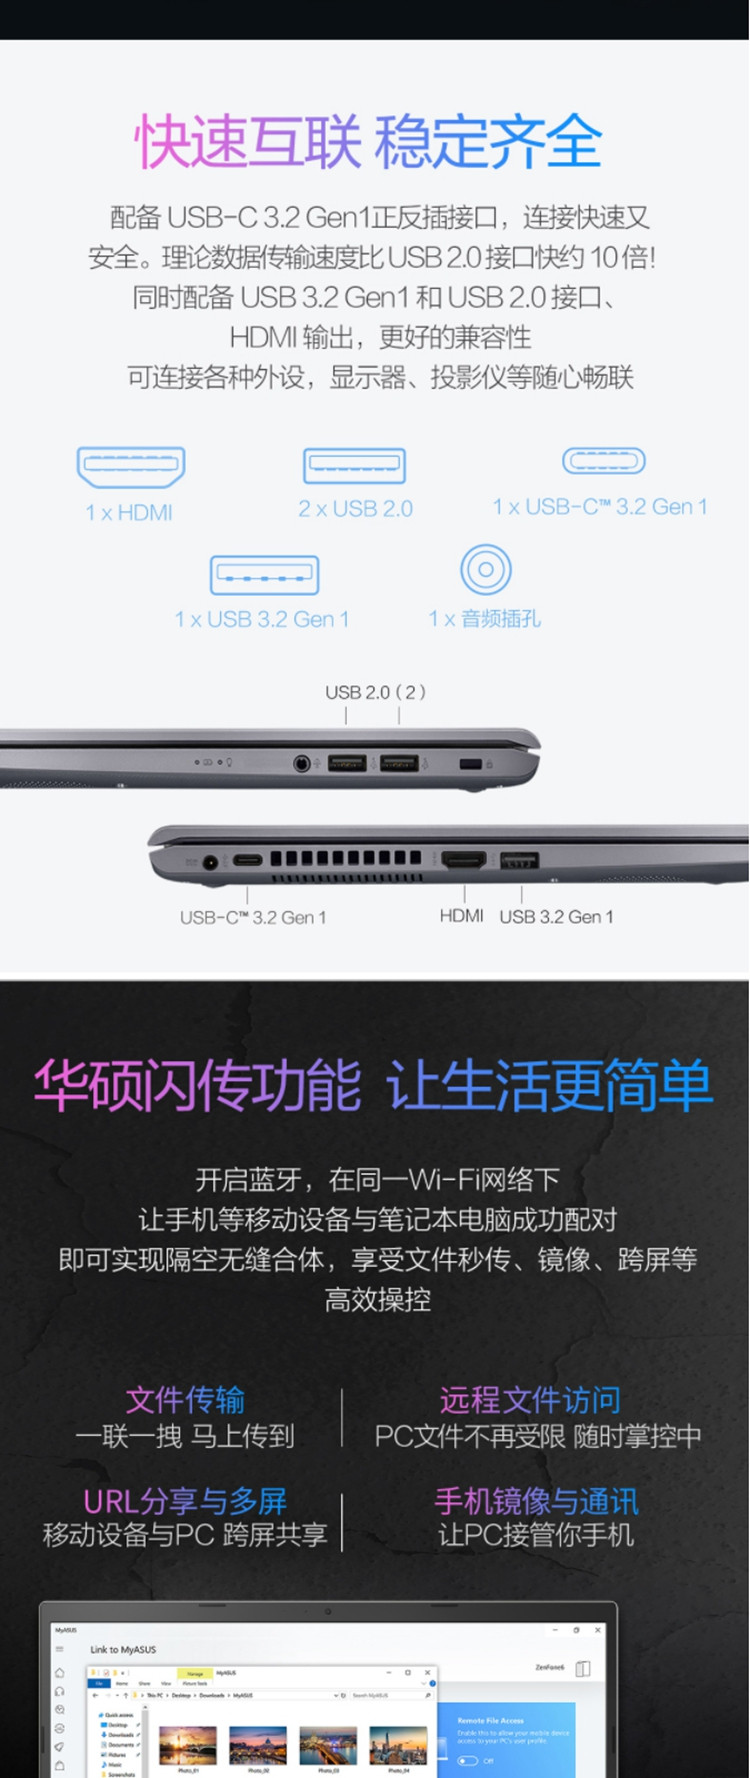 华硕 VivoBook15英特尔酷睿i7 15.6英寸轻薄笔记本i7-1165G7 512G 16G